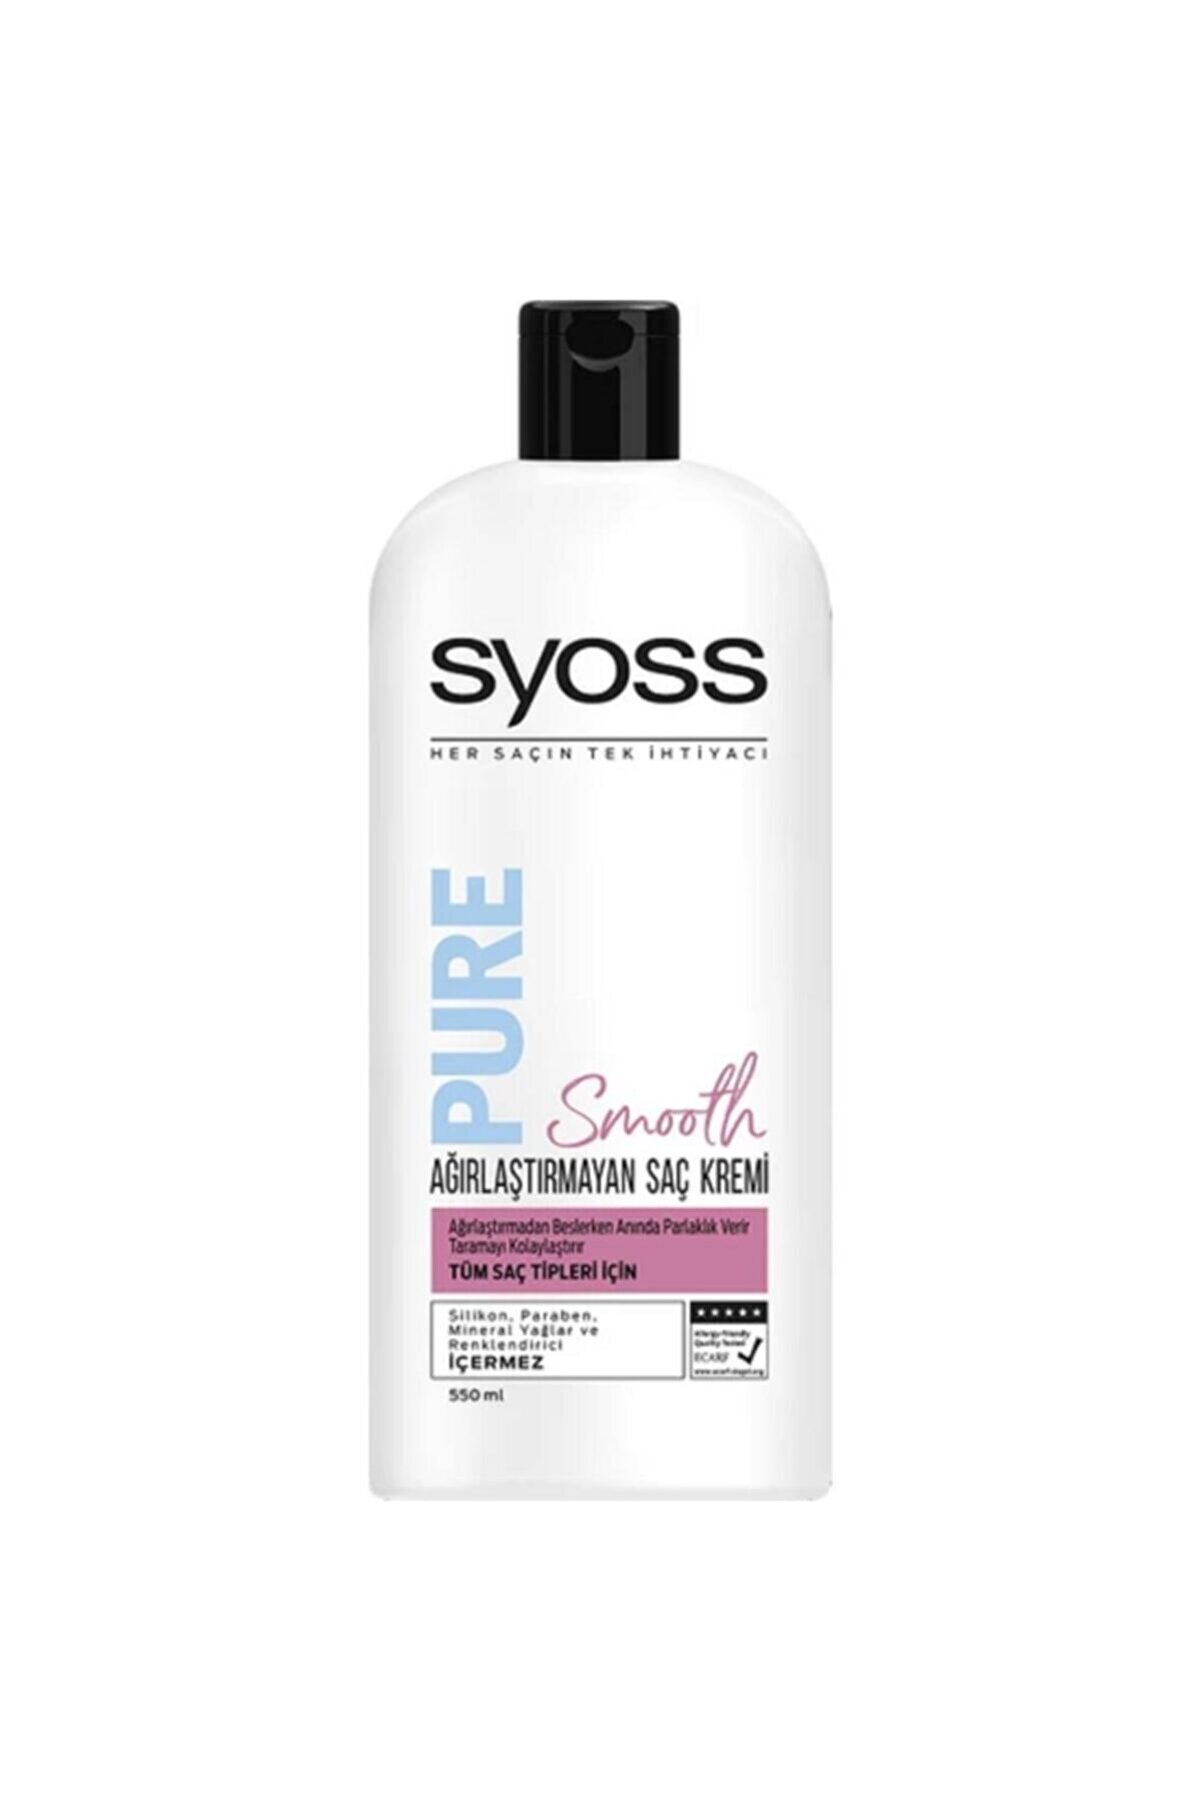 Syoss Pure Smooth Agırlaştırmayan Saç Kremi 550 ml